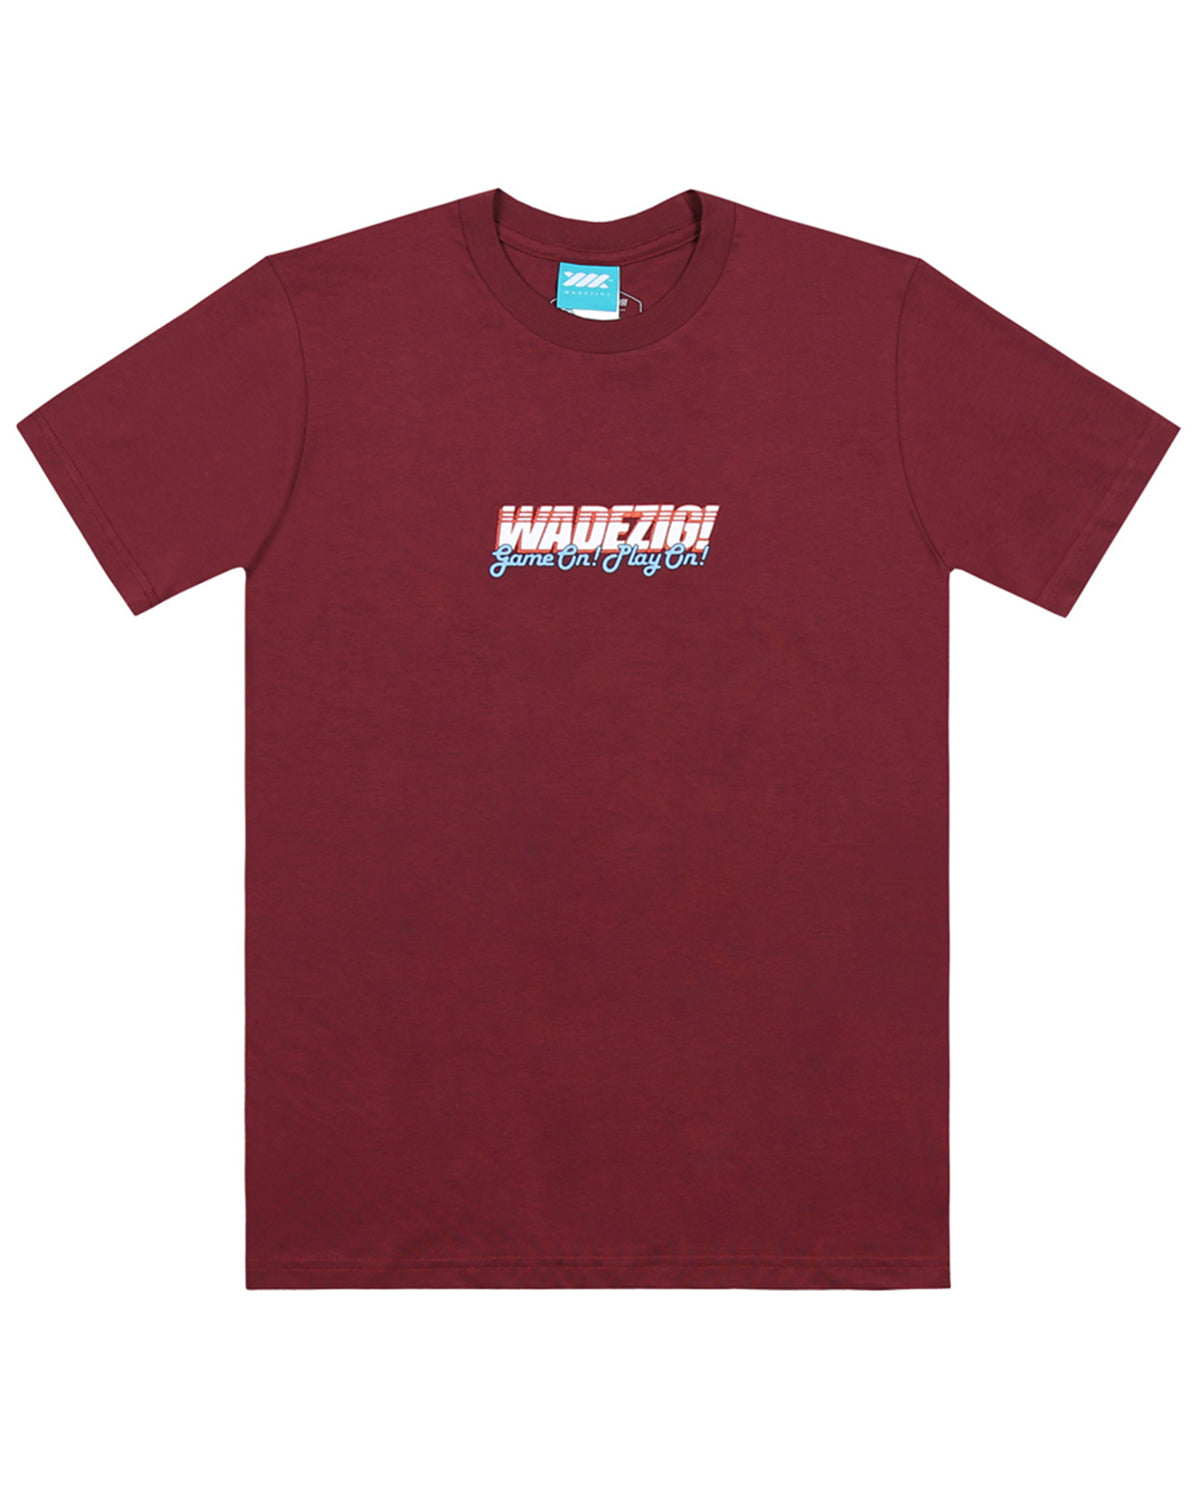 Wadezig! T-Shirt - Maco Maroon